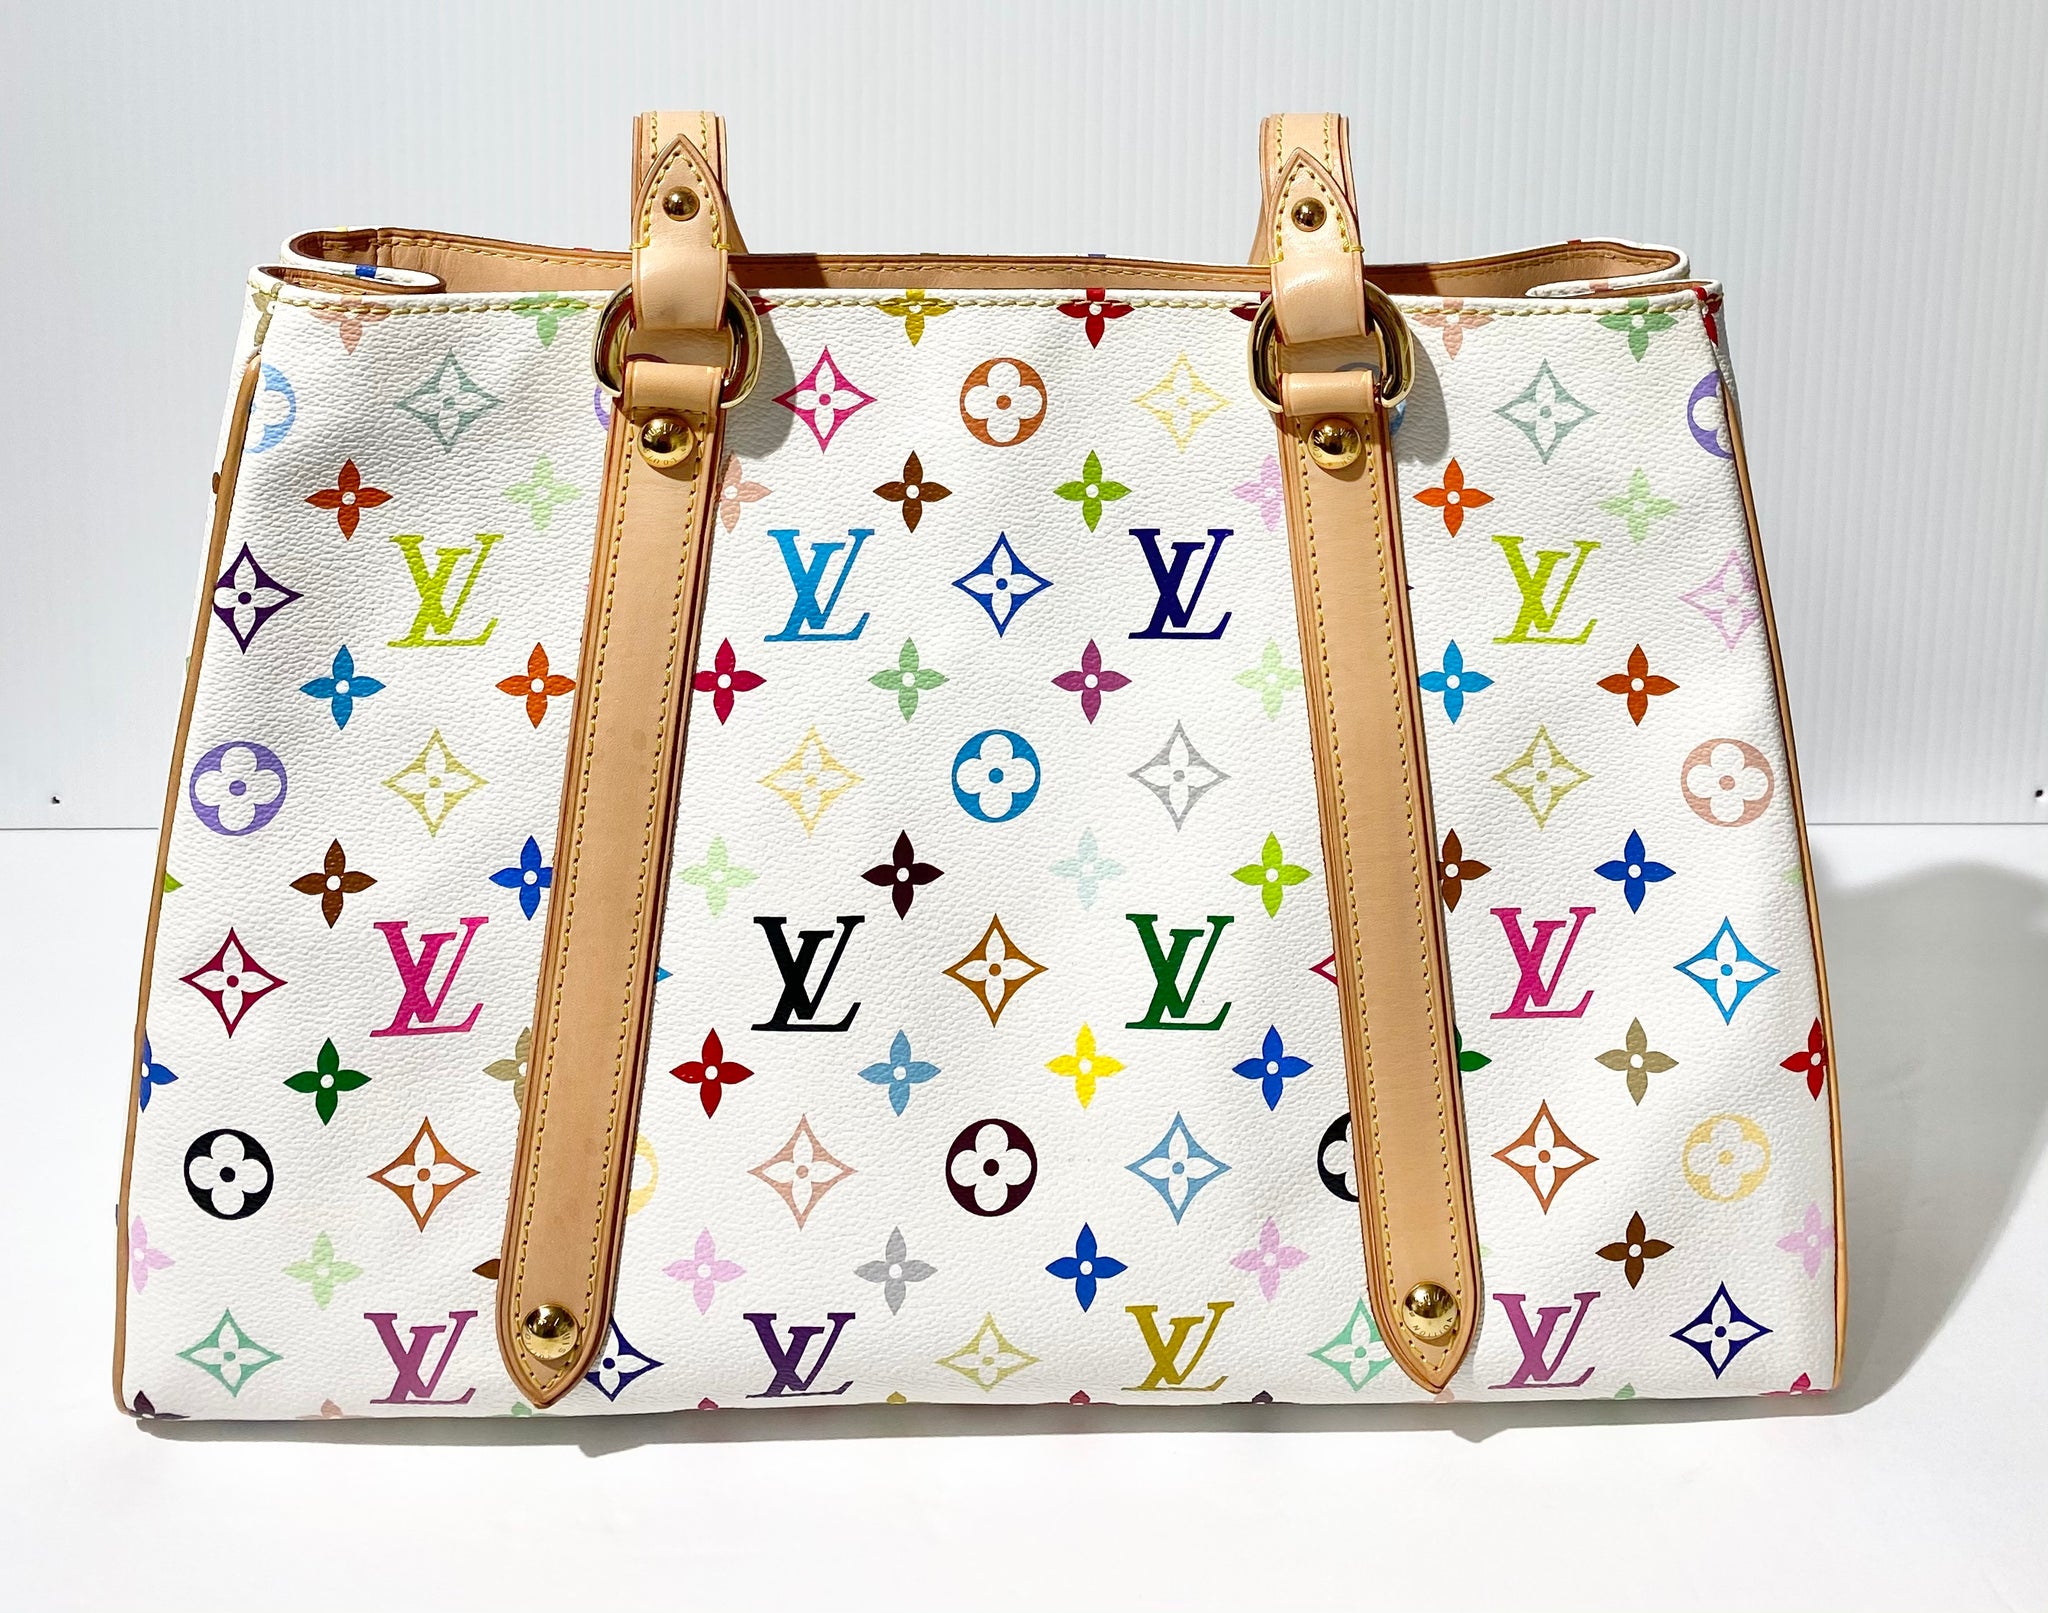 Auth Louis Vuitton Monogram Multicolore Aurelia GM M40100 Women's Tote Bag  Blanc